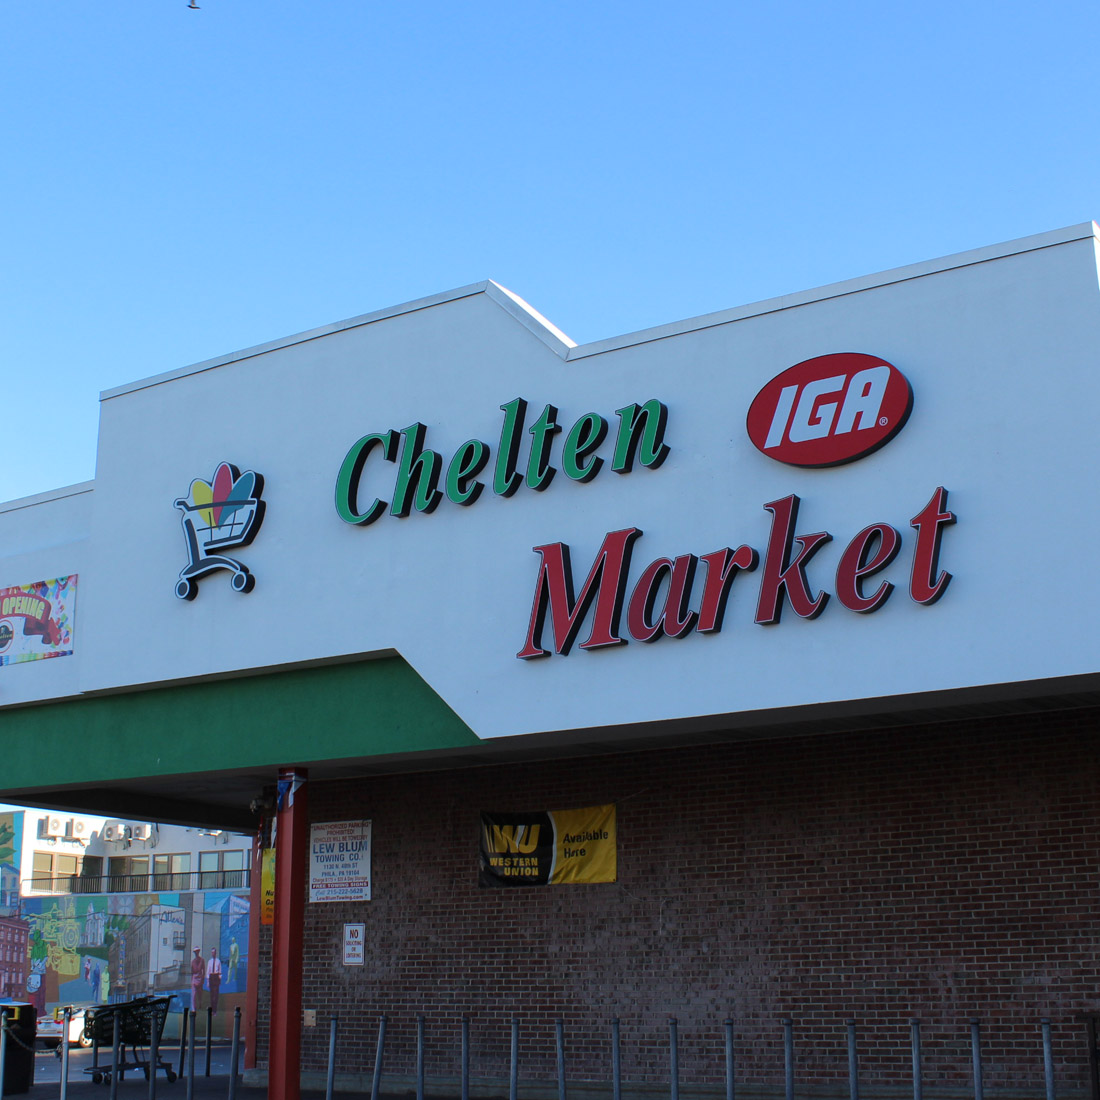 About Chelten Market